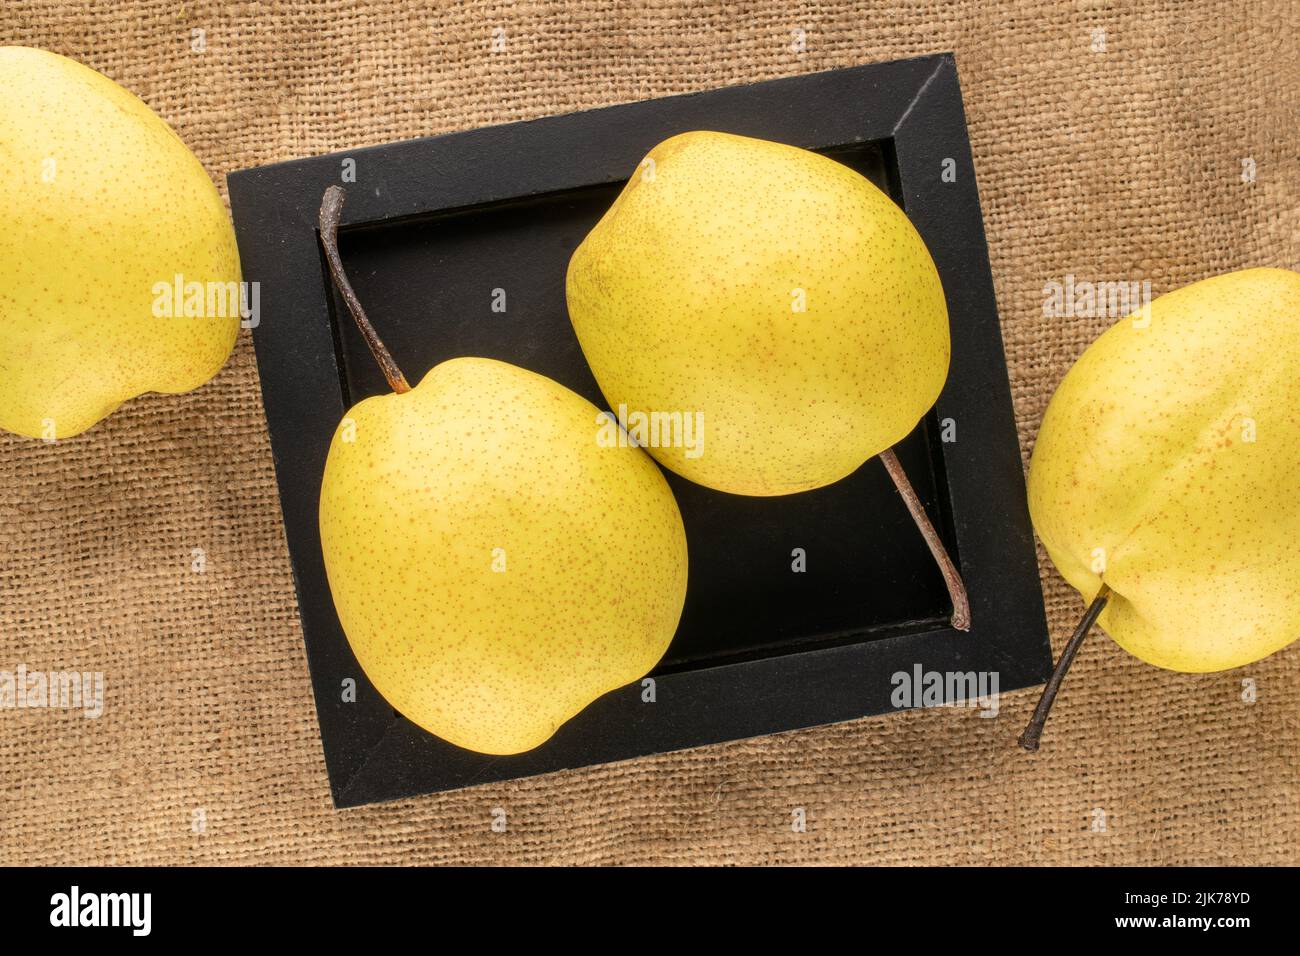 Quatre poires jaune vif avec plateau en bois noir sur toile de jute, vue rapprochée du dessus. Banque D'Images